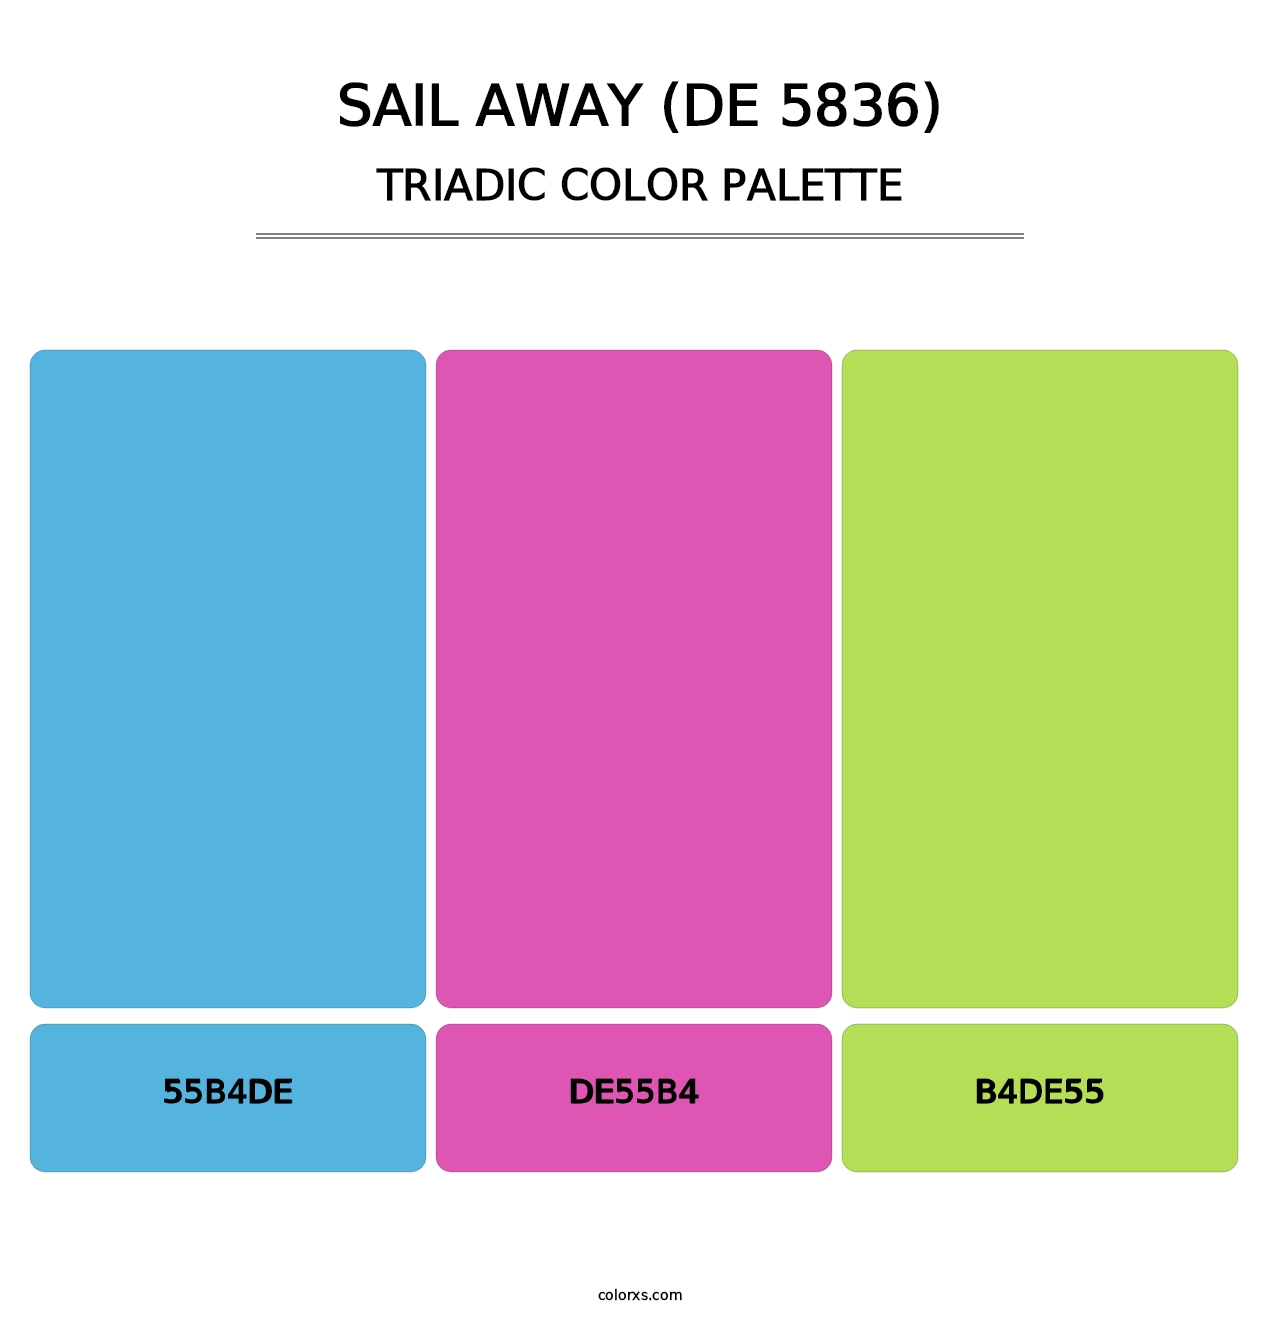 Sail Away (DE 5836) - Triadic Color Palette